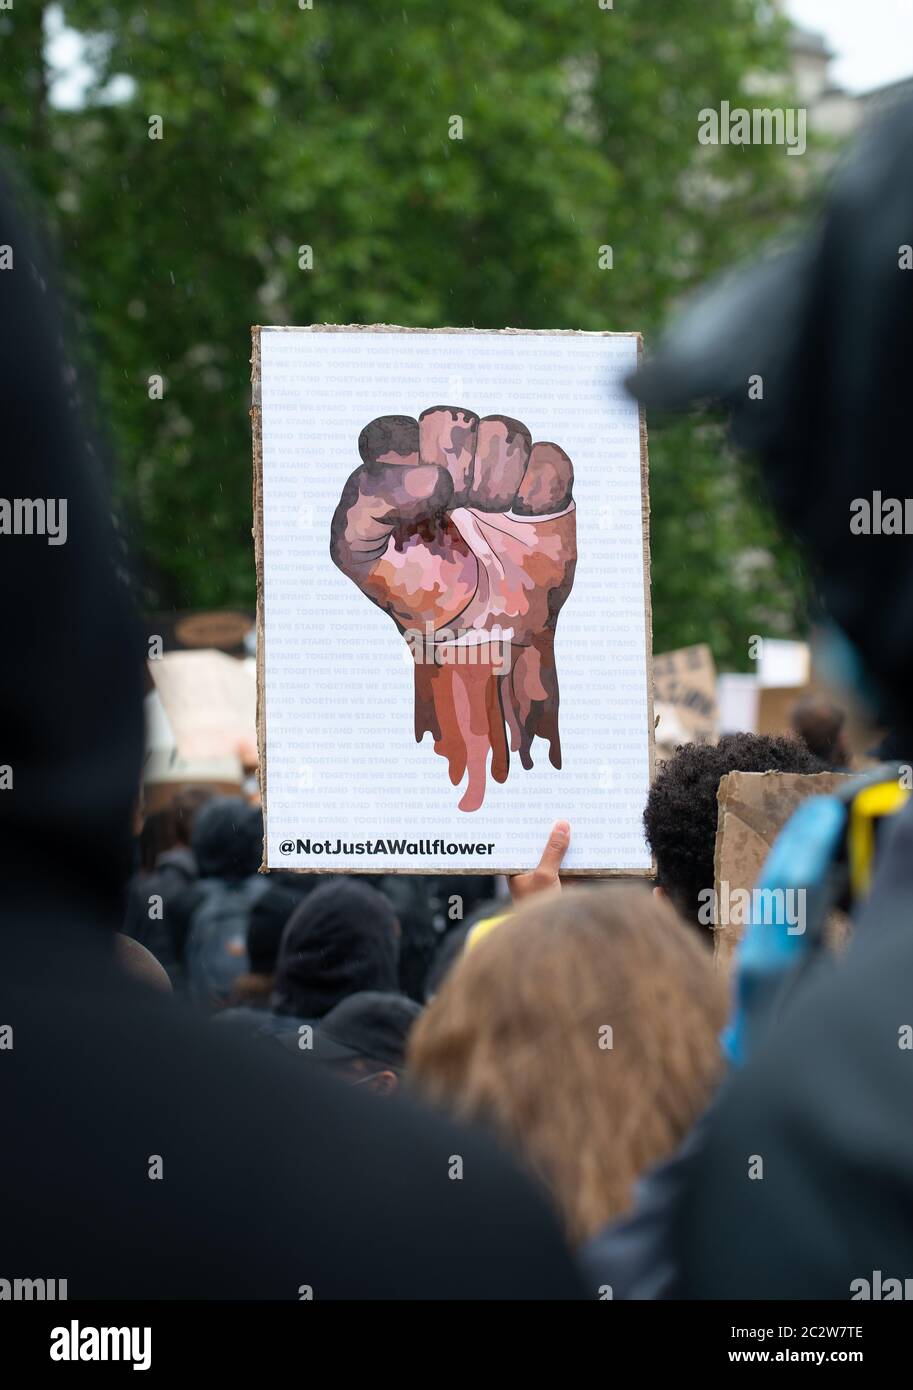 Attivista anti-razzismo con segno, alla manifestazione Black Lives Matter, in protesta della morte di George Floyd nero americano da parte della polizia statunitense. Foto Stock